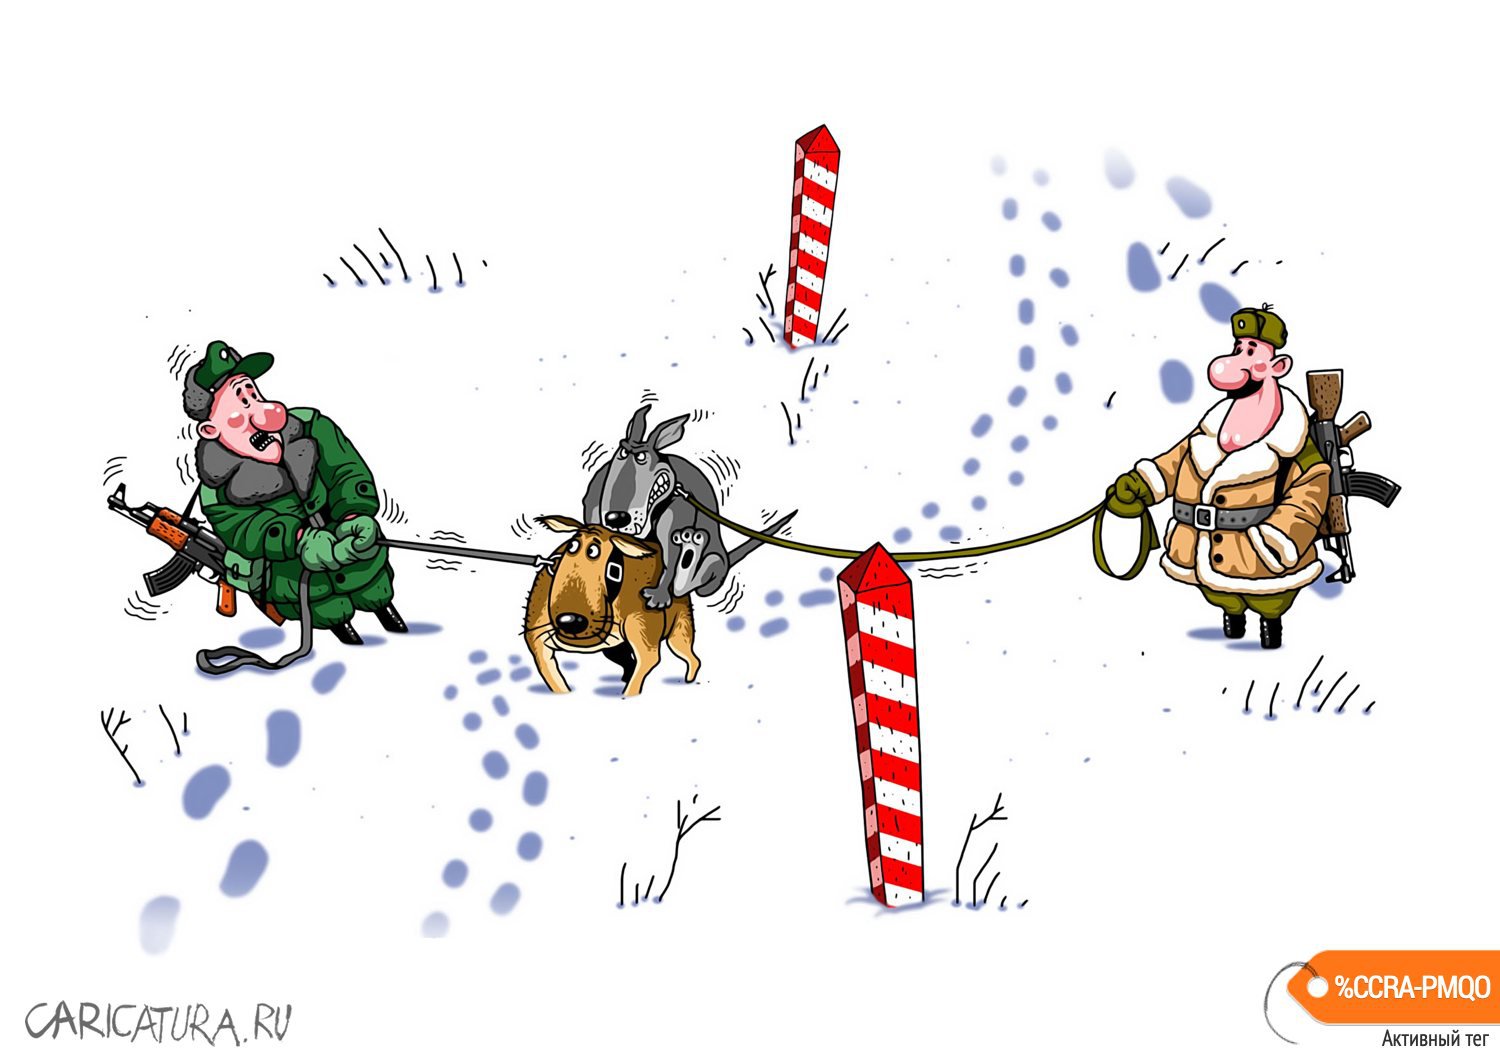 Карикатура "На границе", Игорь Конденко